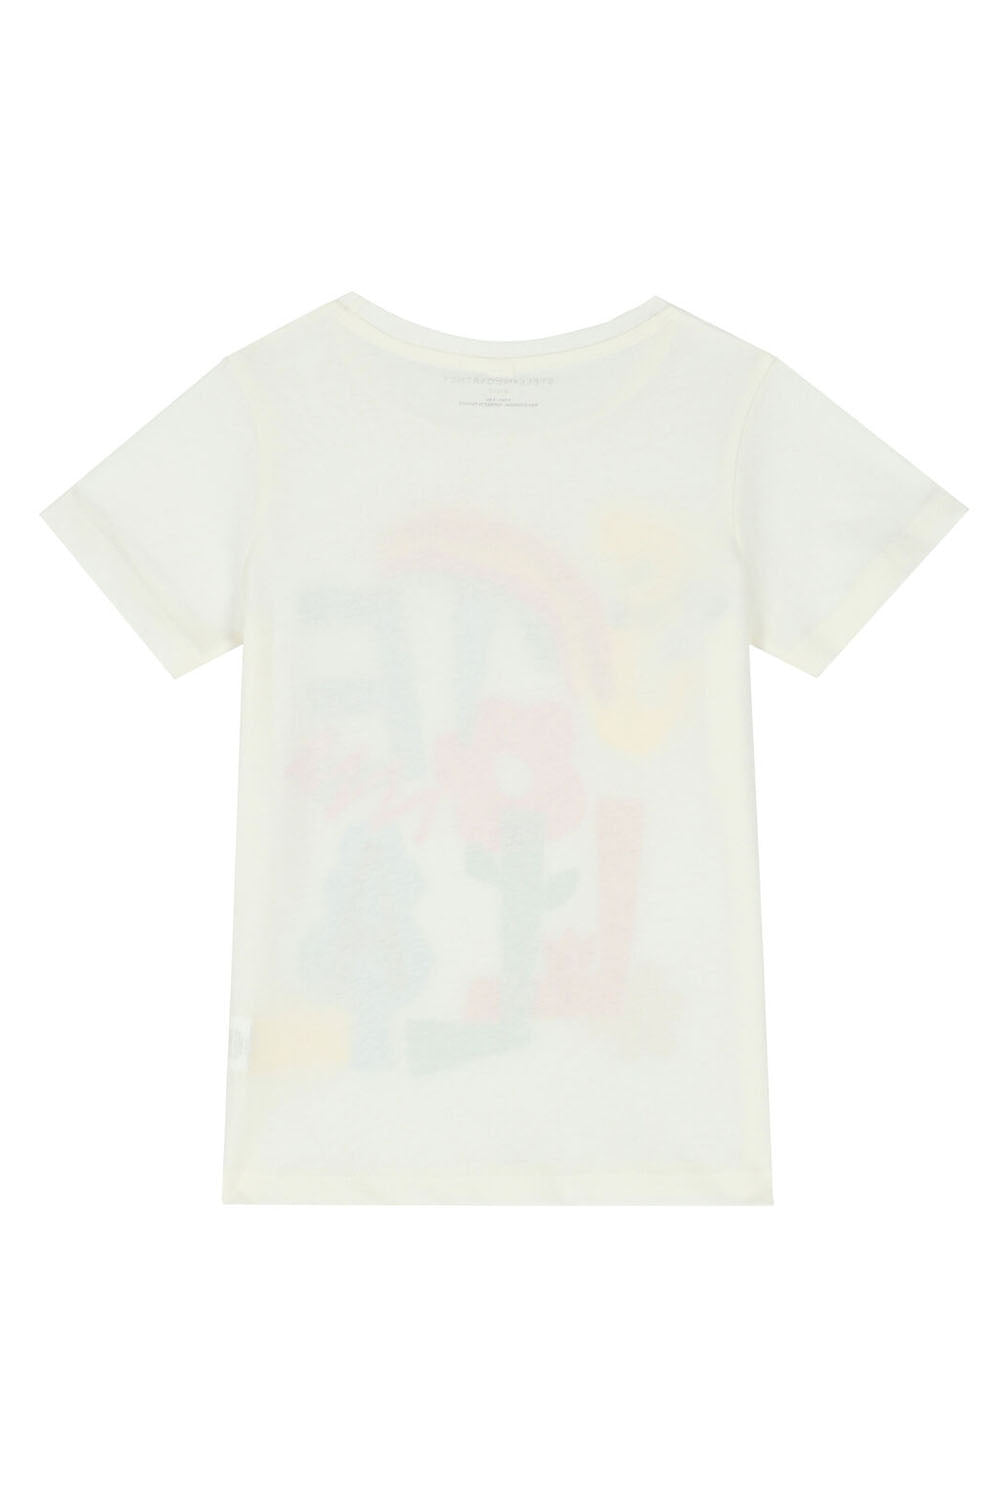 Logo Flower Rainbow T-Shirt for Girls